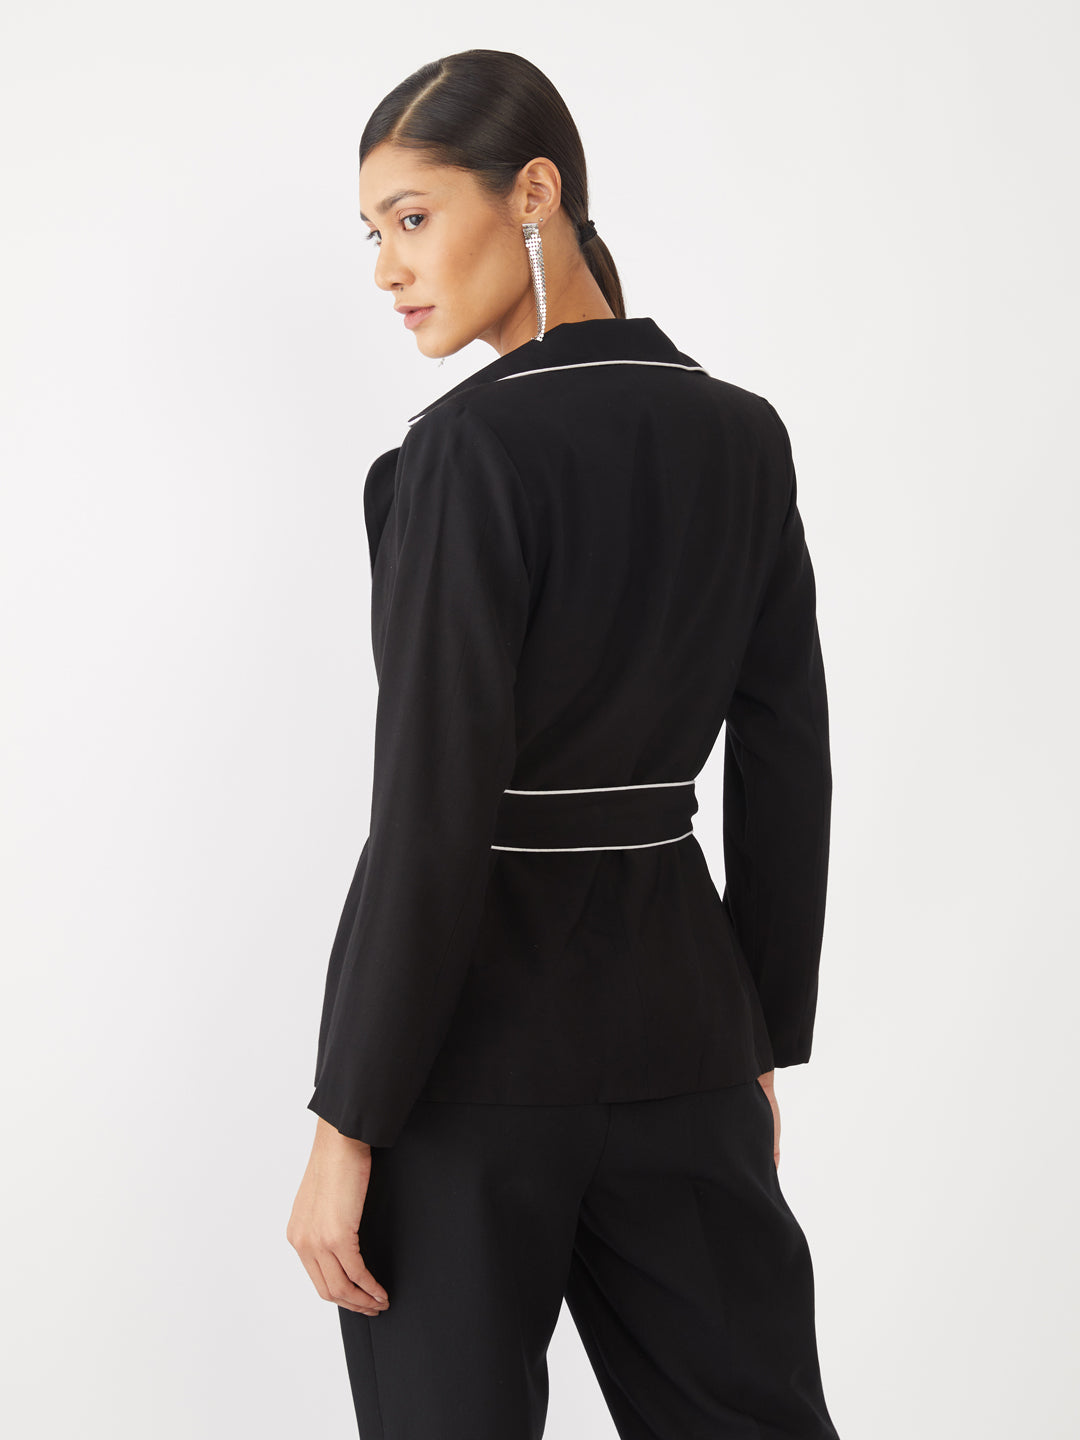 Black Solid Tie-Up Coat For Women